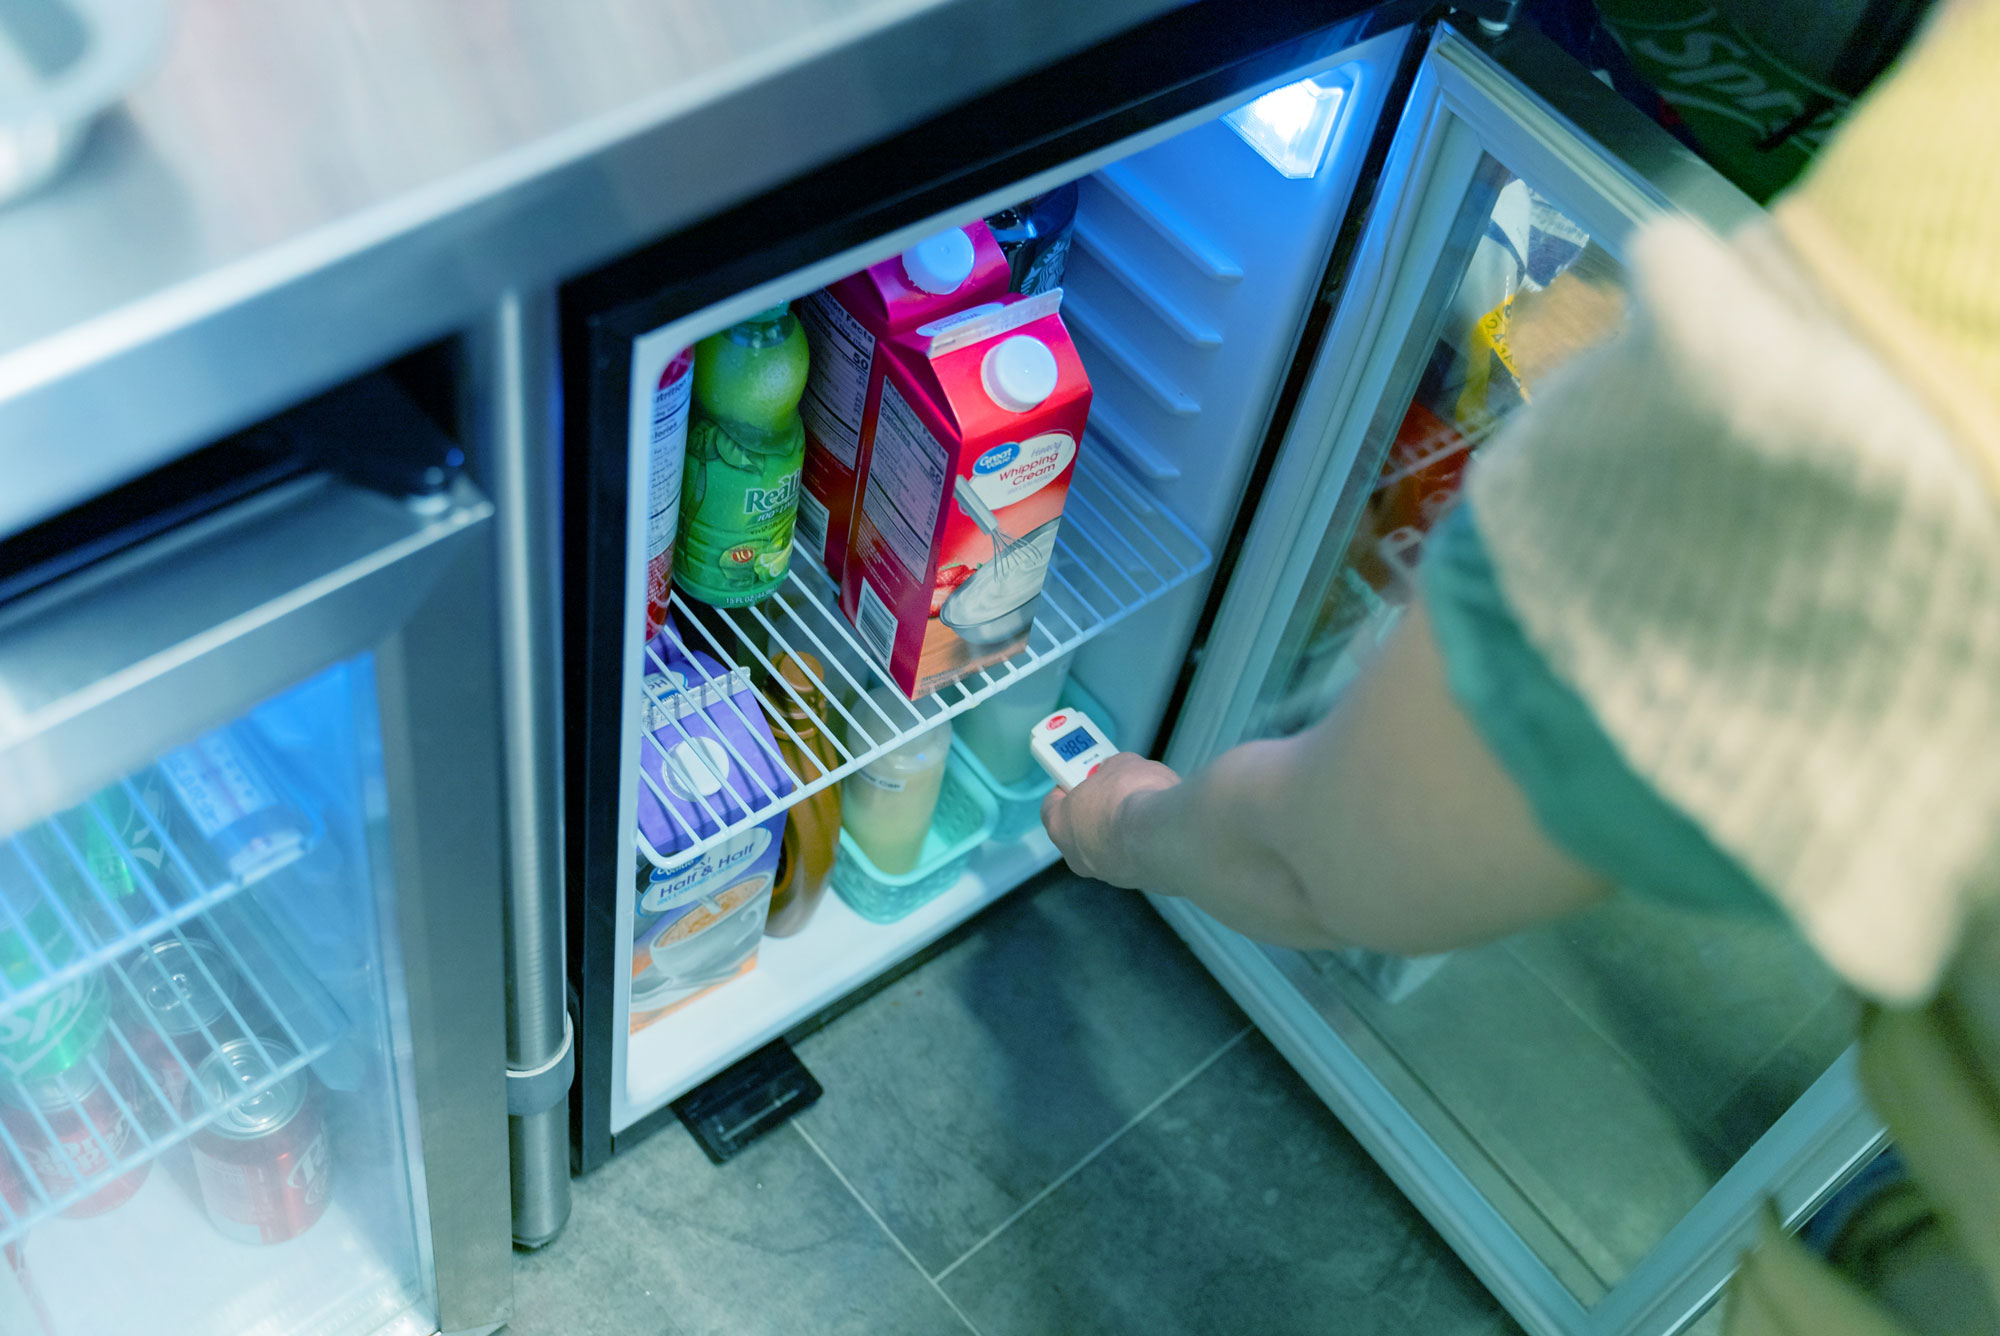 Person checking temperature in a refrigerator